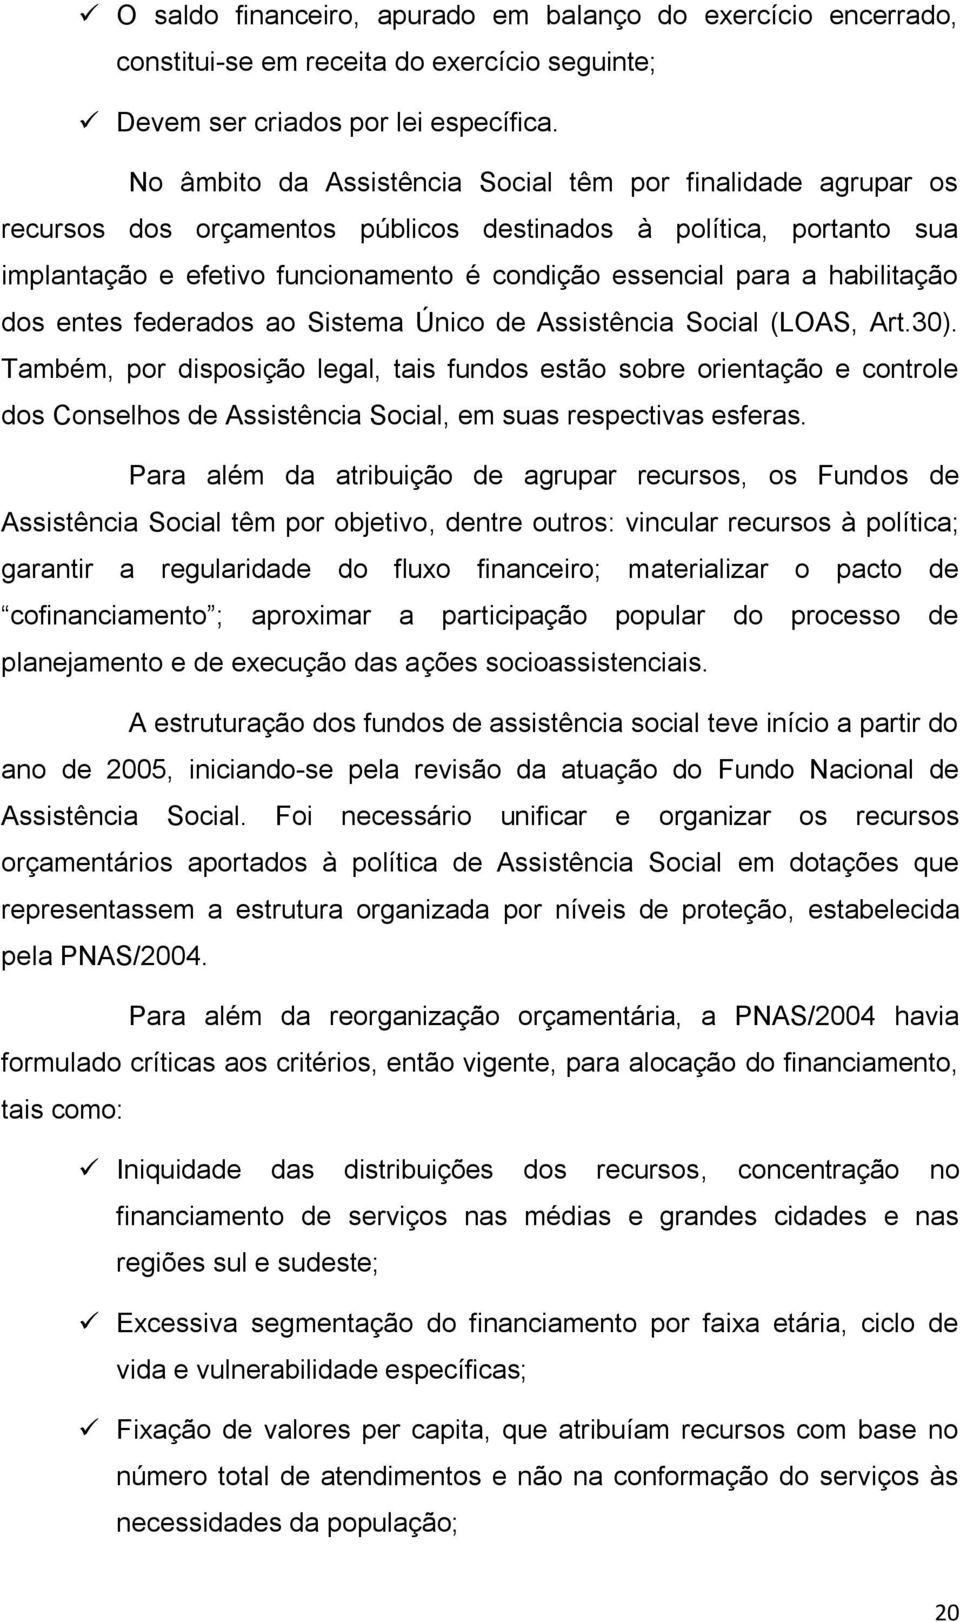 habilitação dos entes federados ao Sistema Único de Assistência Social (LOAS, Art.30).